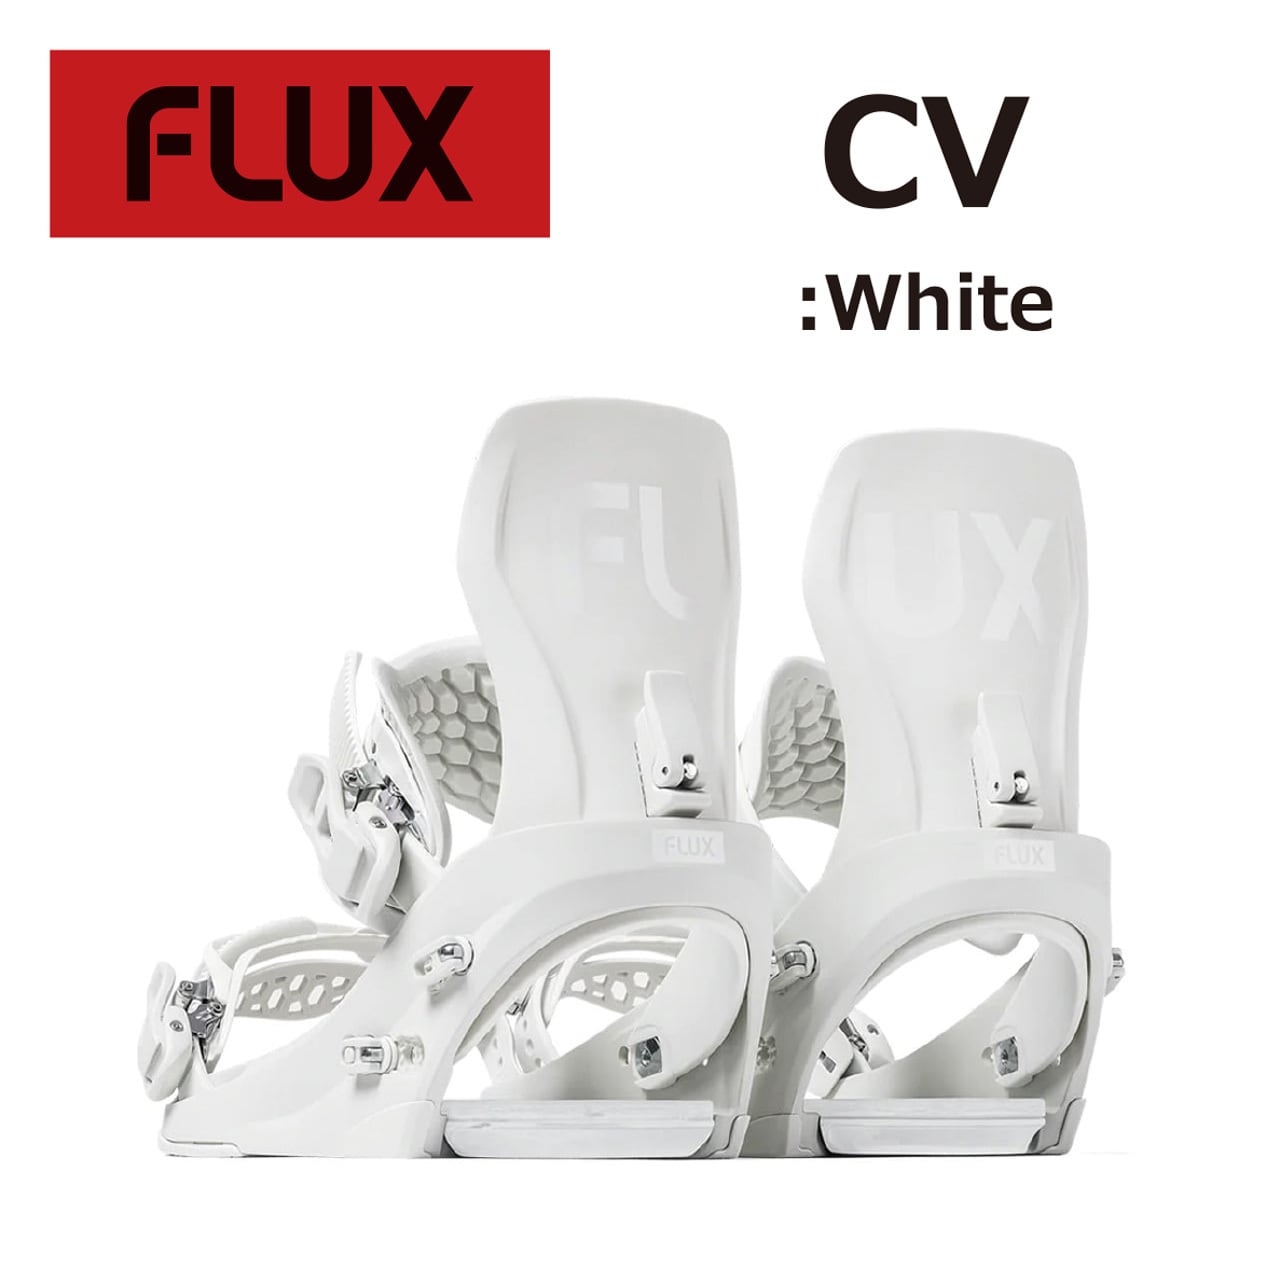 22-23 FLUX CV WHITE Ssize 新品